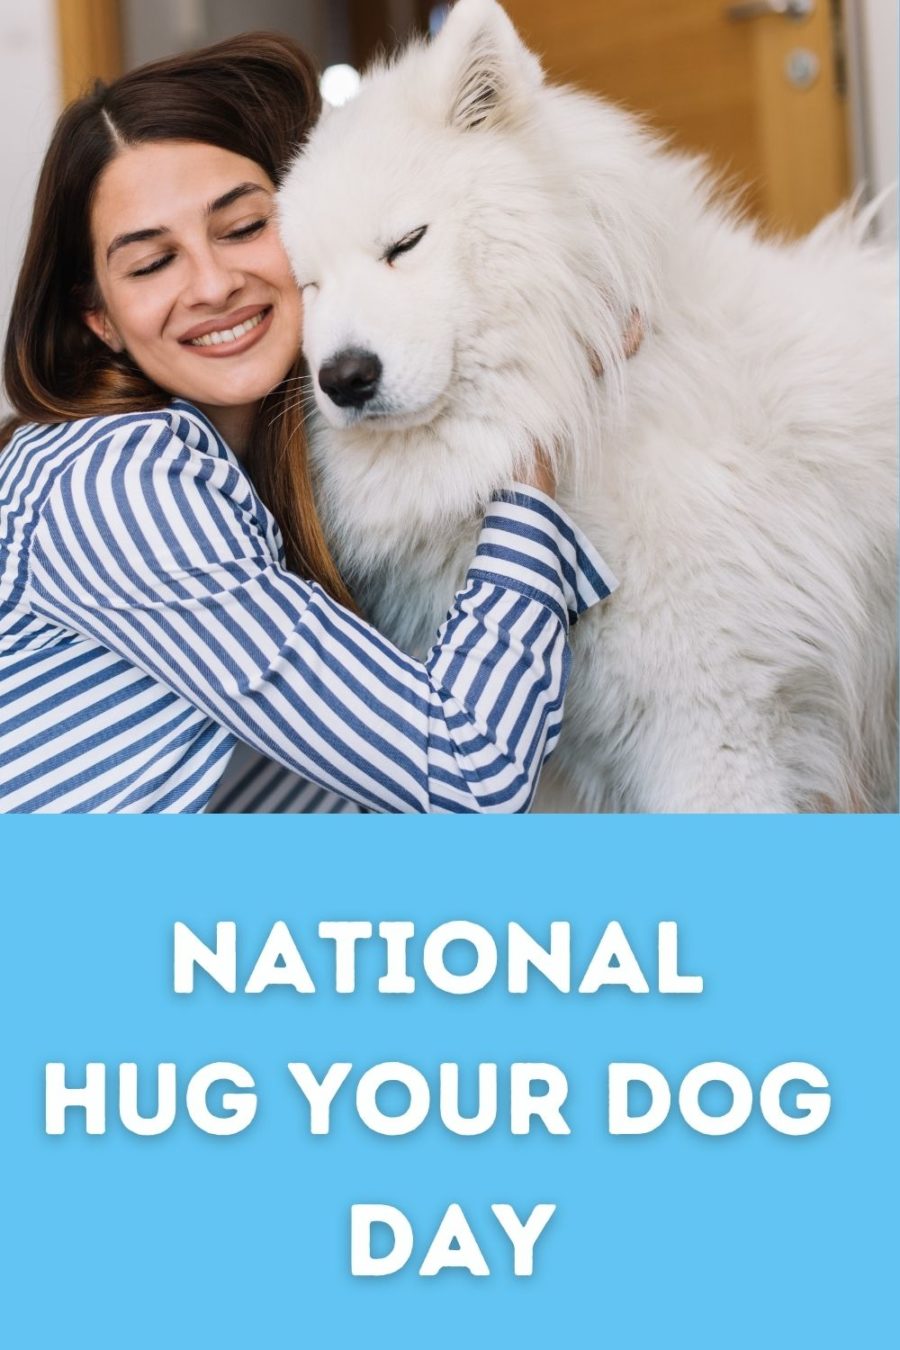 NATIONAL HUG YOUR DOG DAY